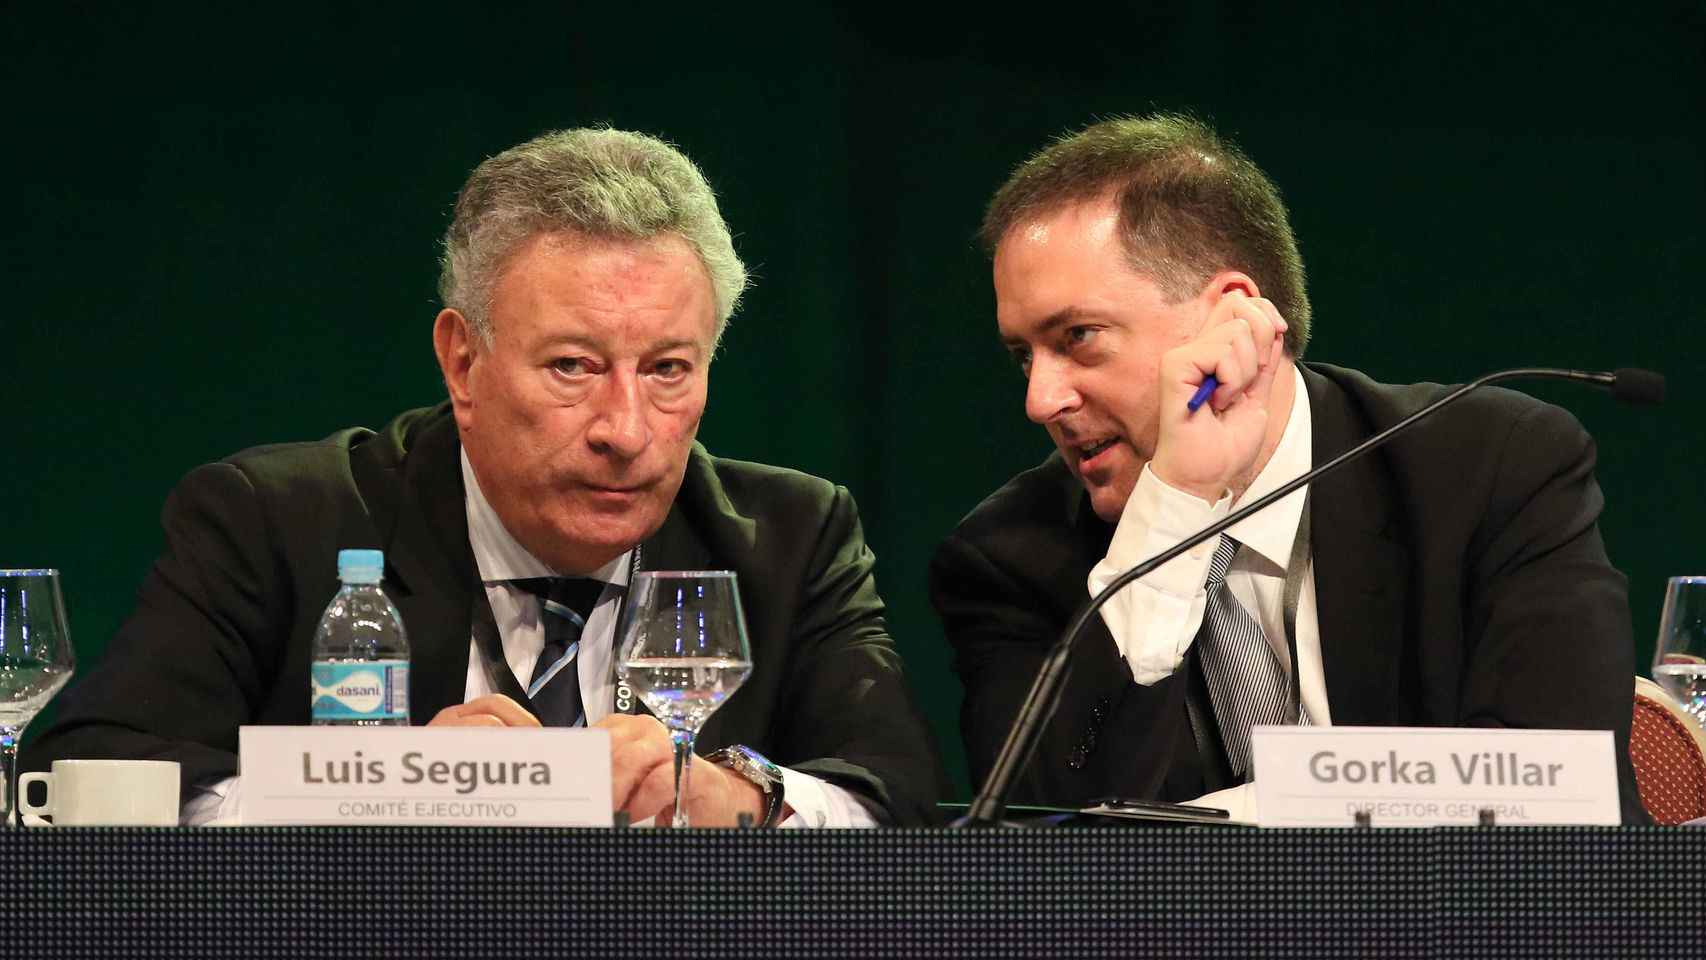 Su hijo Gorka Villar es director general de la Confederación Sudamericana de Fútbol (CONMEBOL)